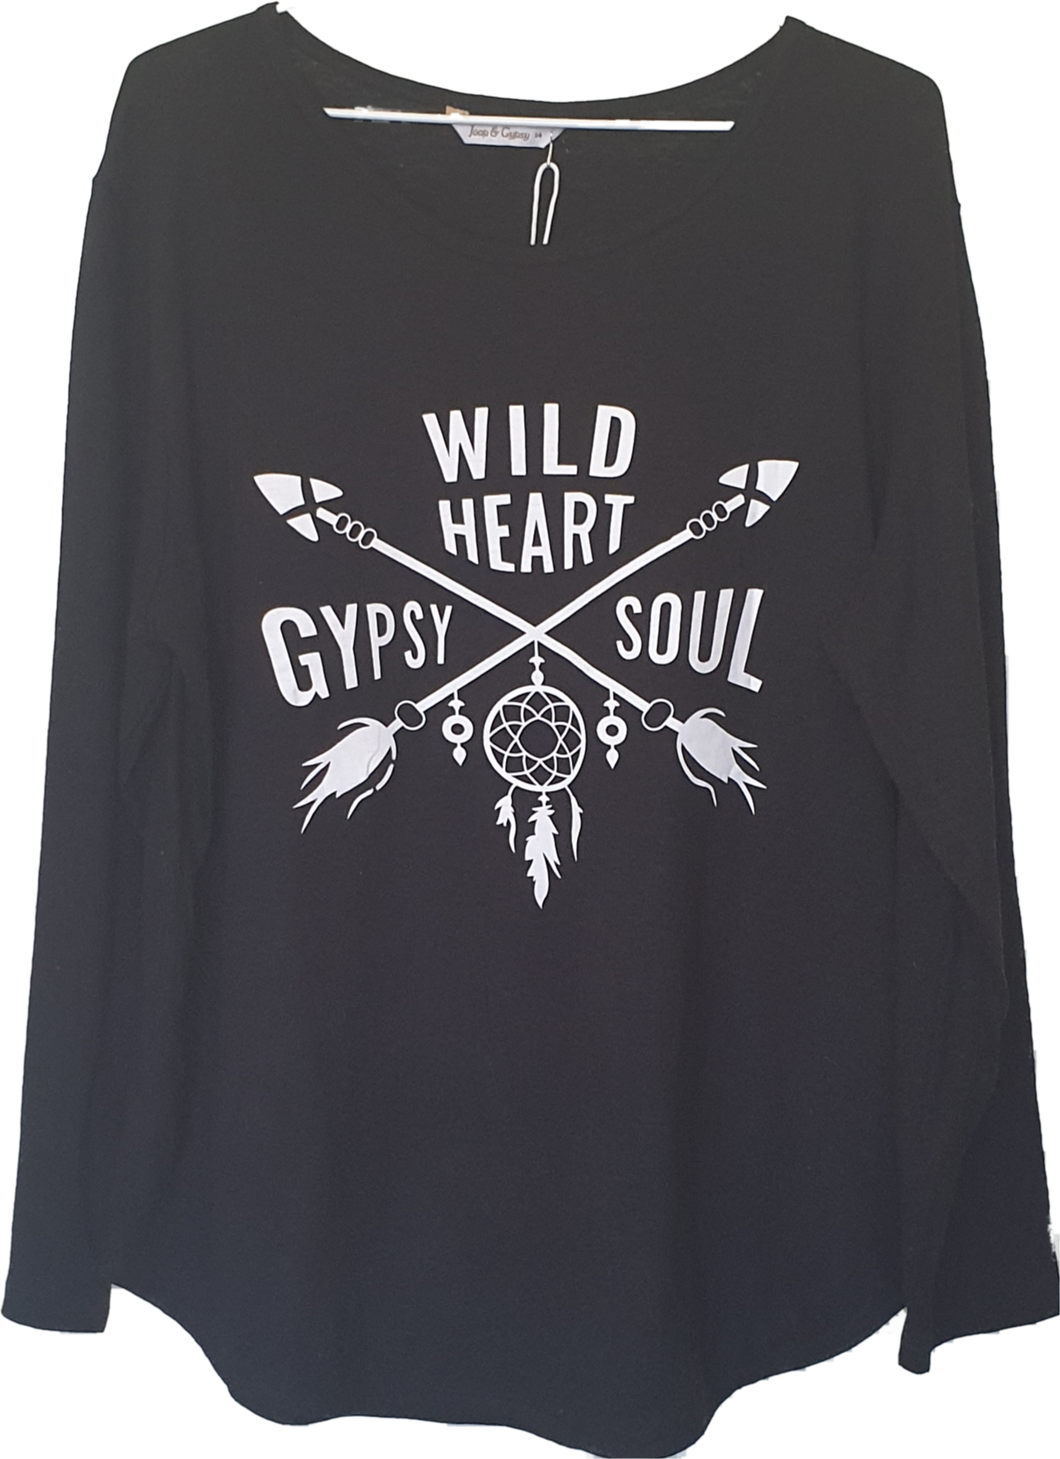 Joop And Gypsy Wild Heart Gypsy Soul Long Sleeve Tee 